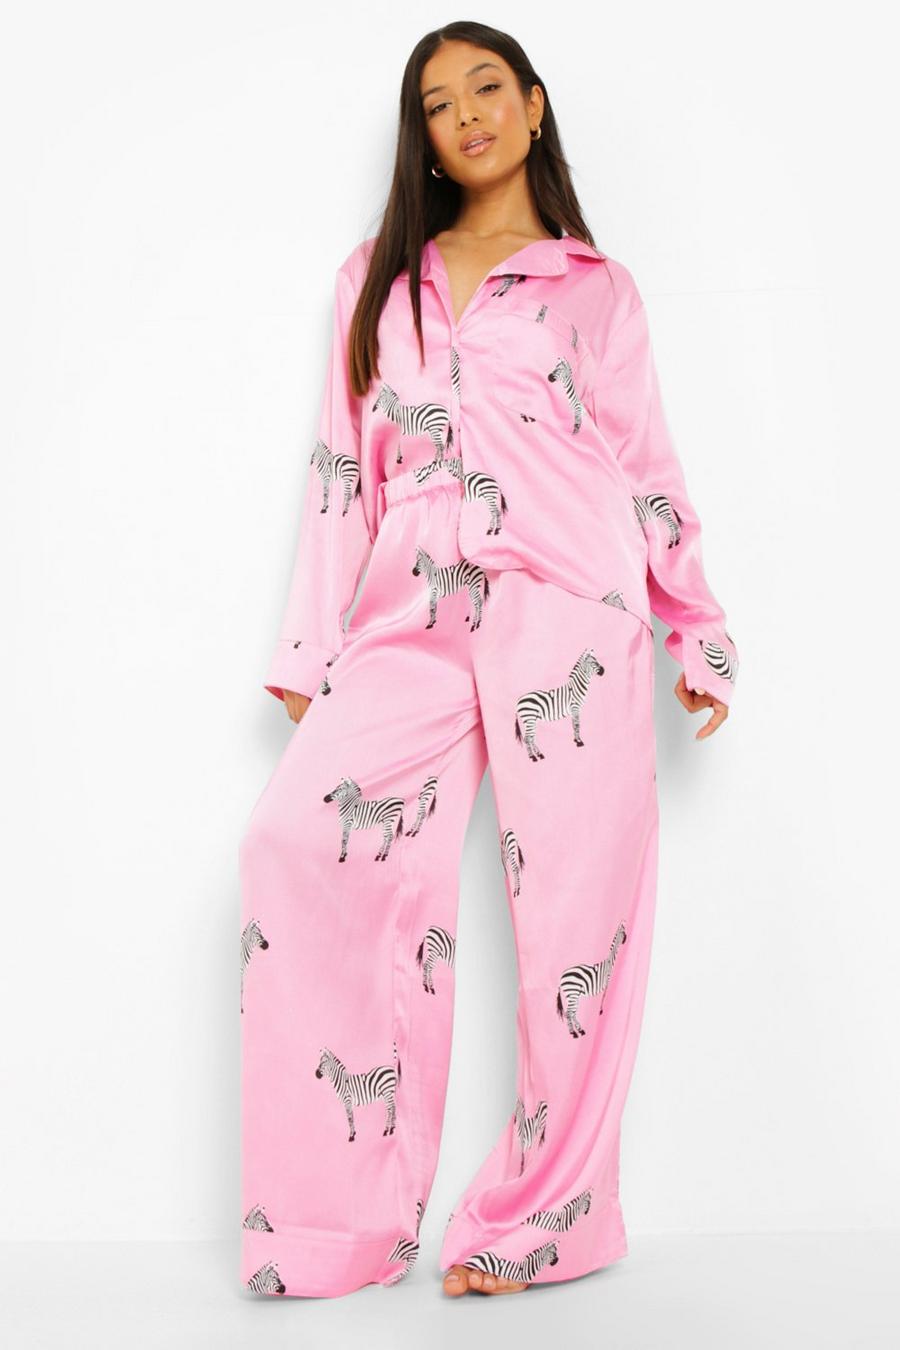 Pijama Petite largo con estampado de cebras, Hot pink rosa